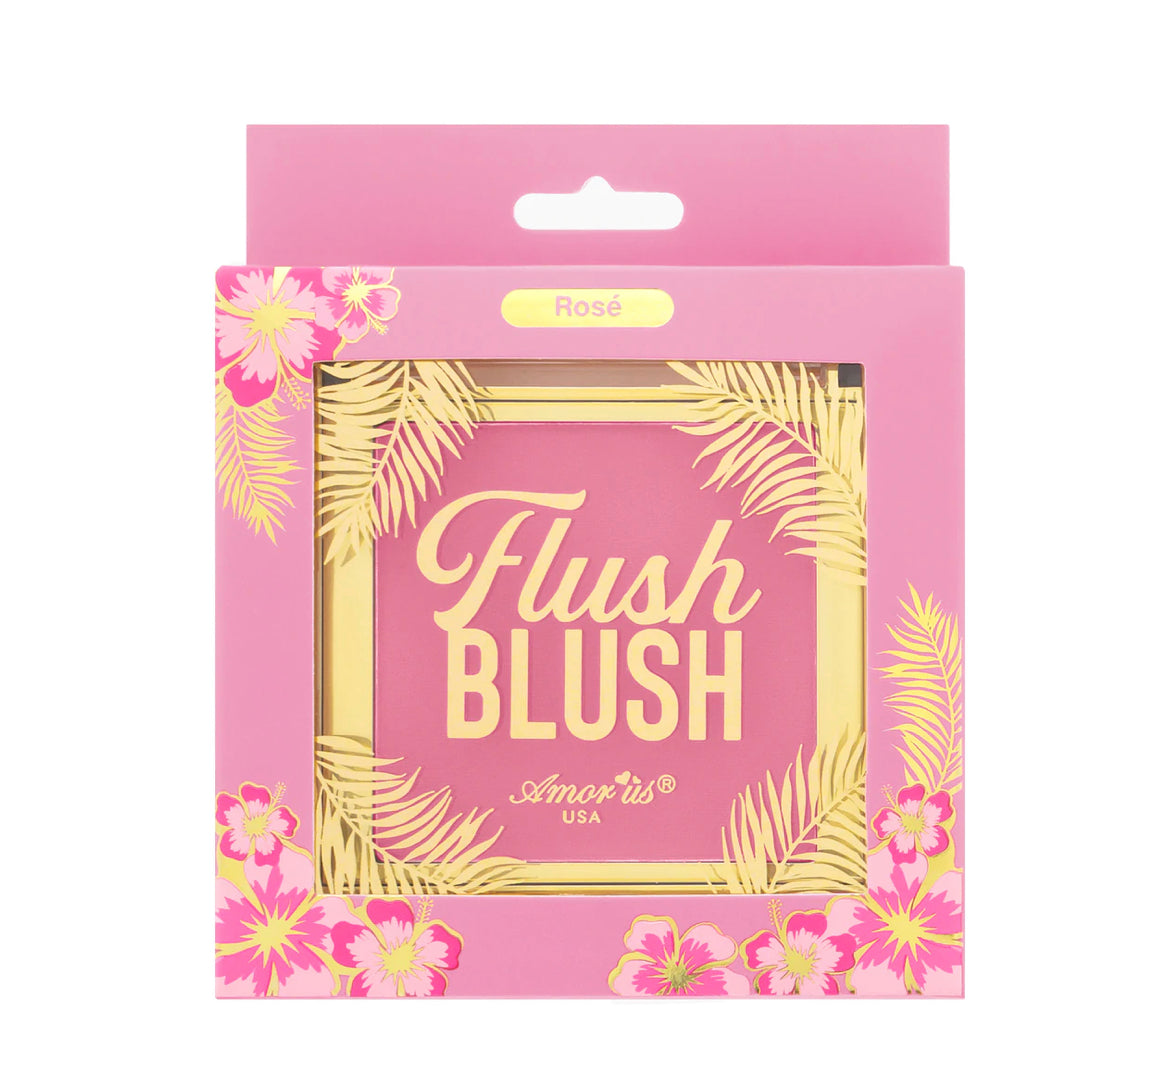 ROSE - FLUSH BLUSH POWDER BLUSH